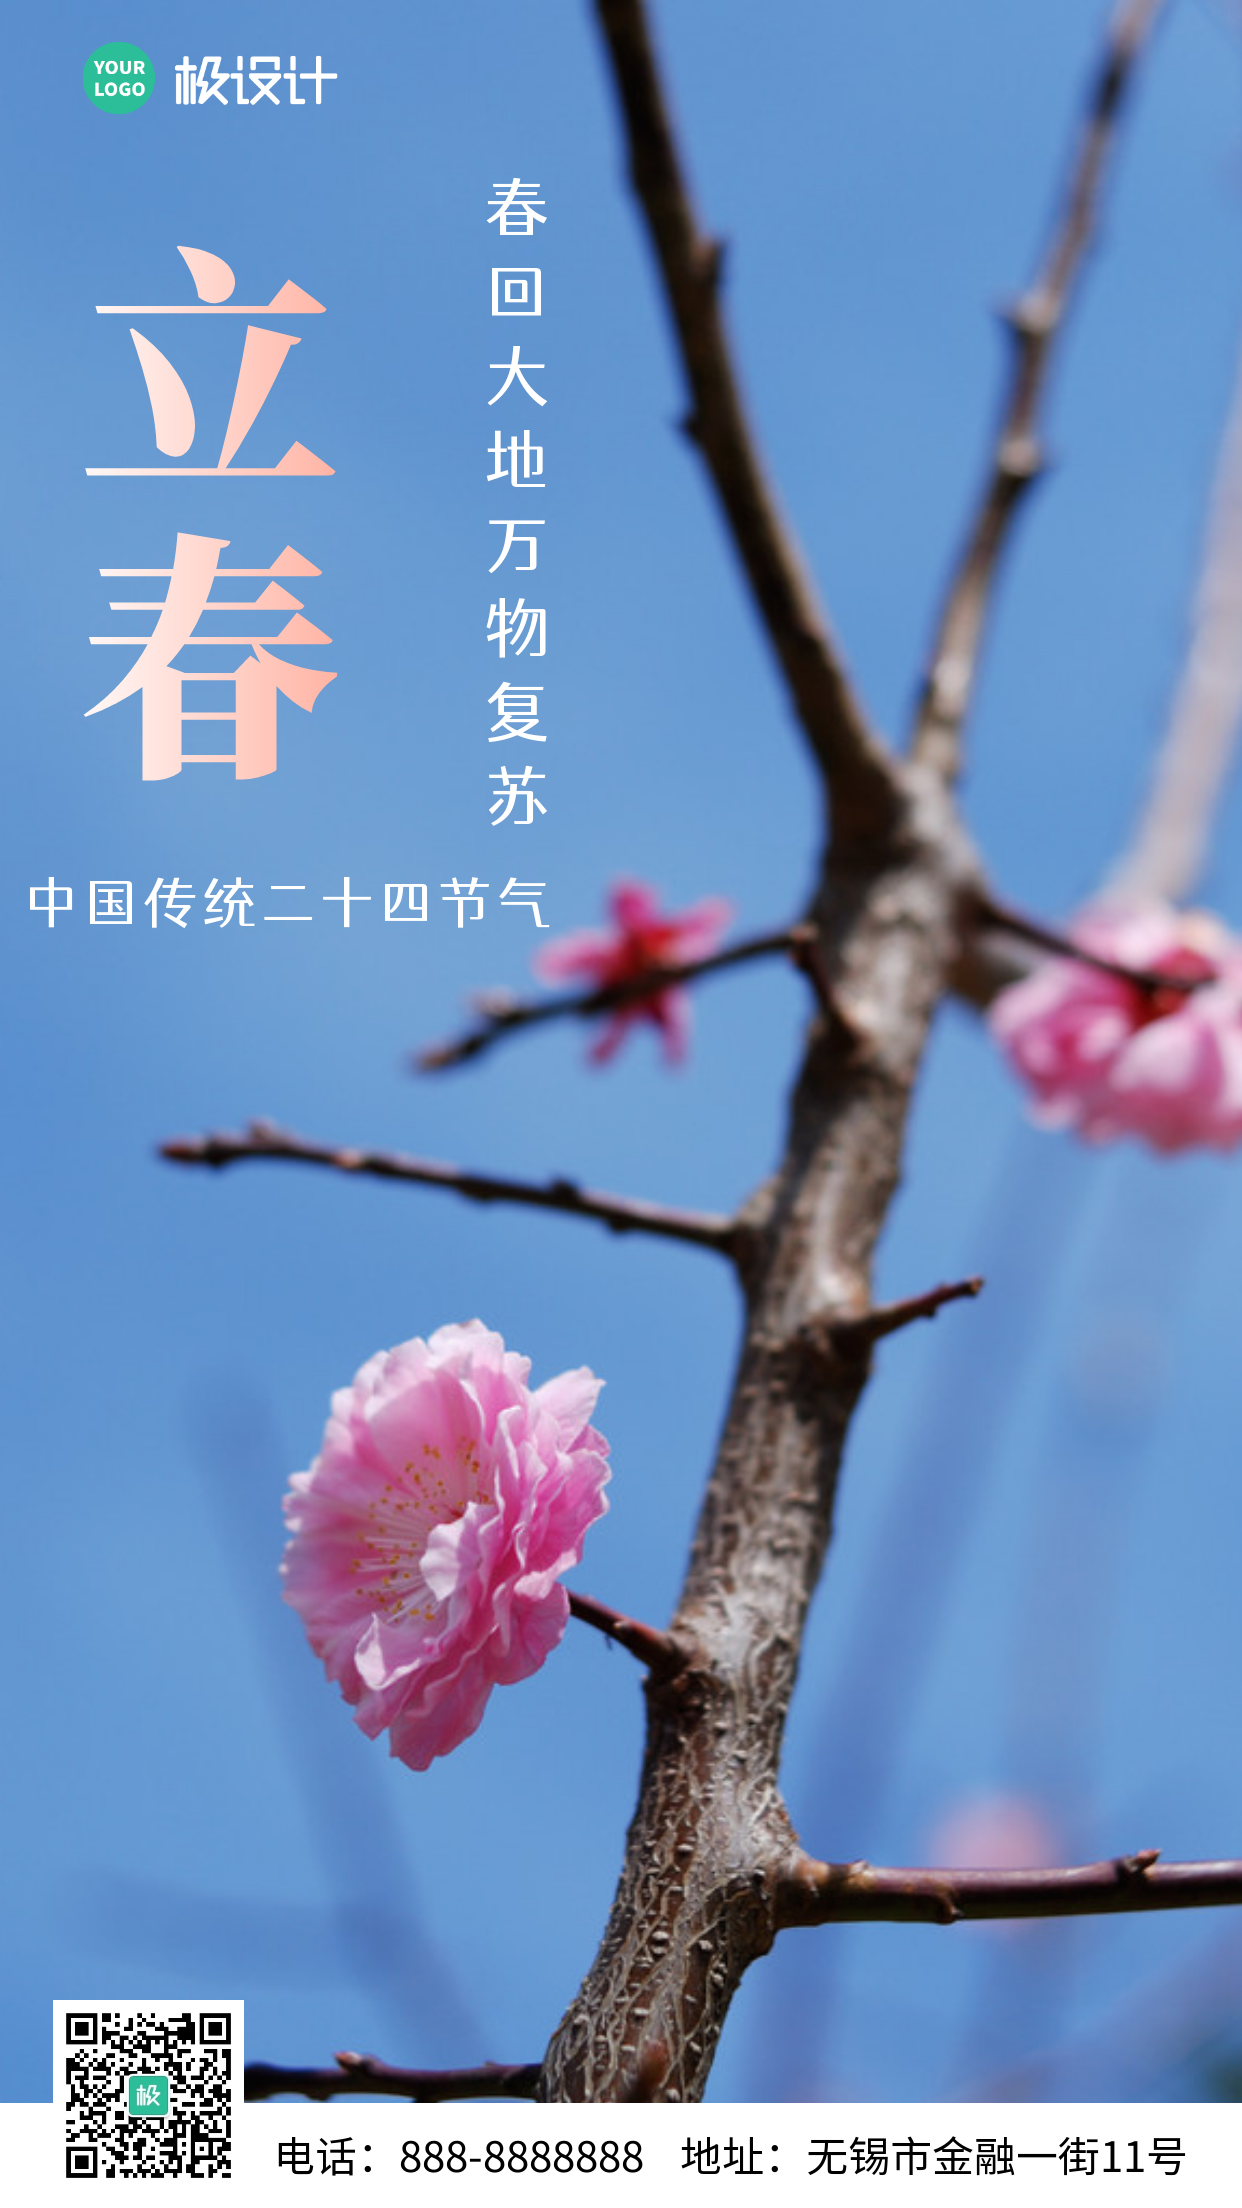 蓝色清新花朵摄影立春节气品牌借势营销手机海报